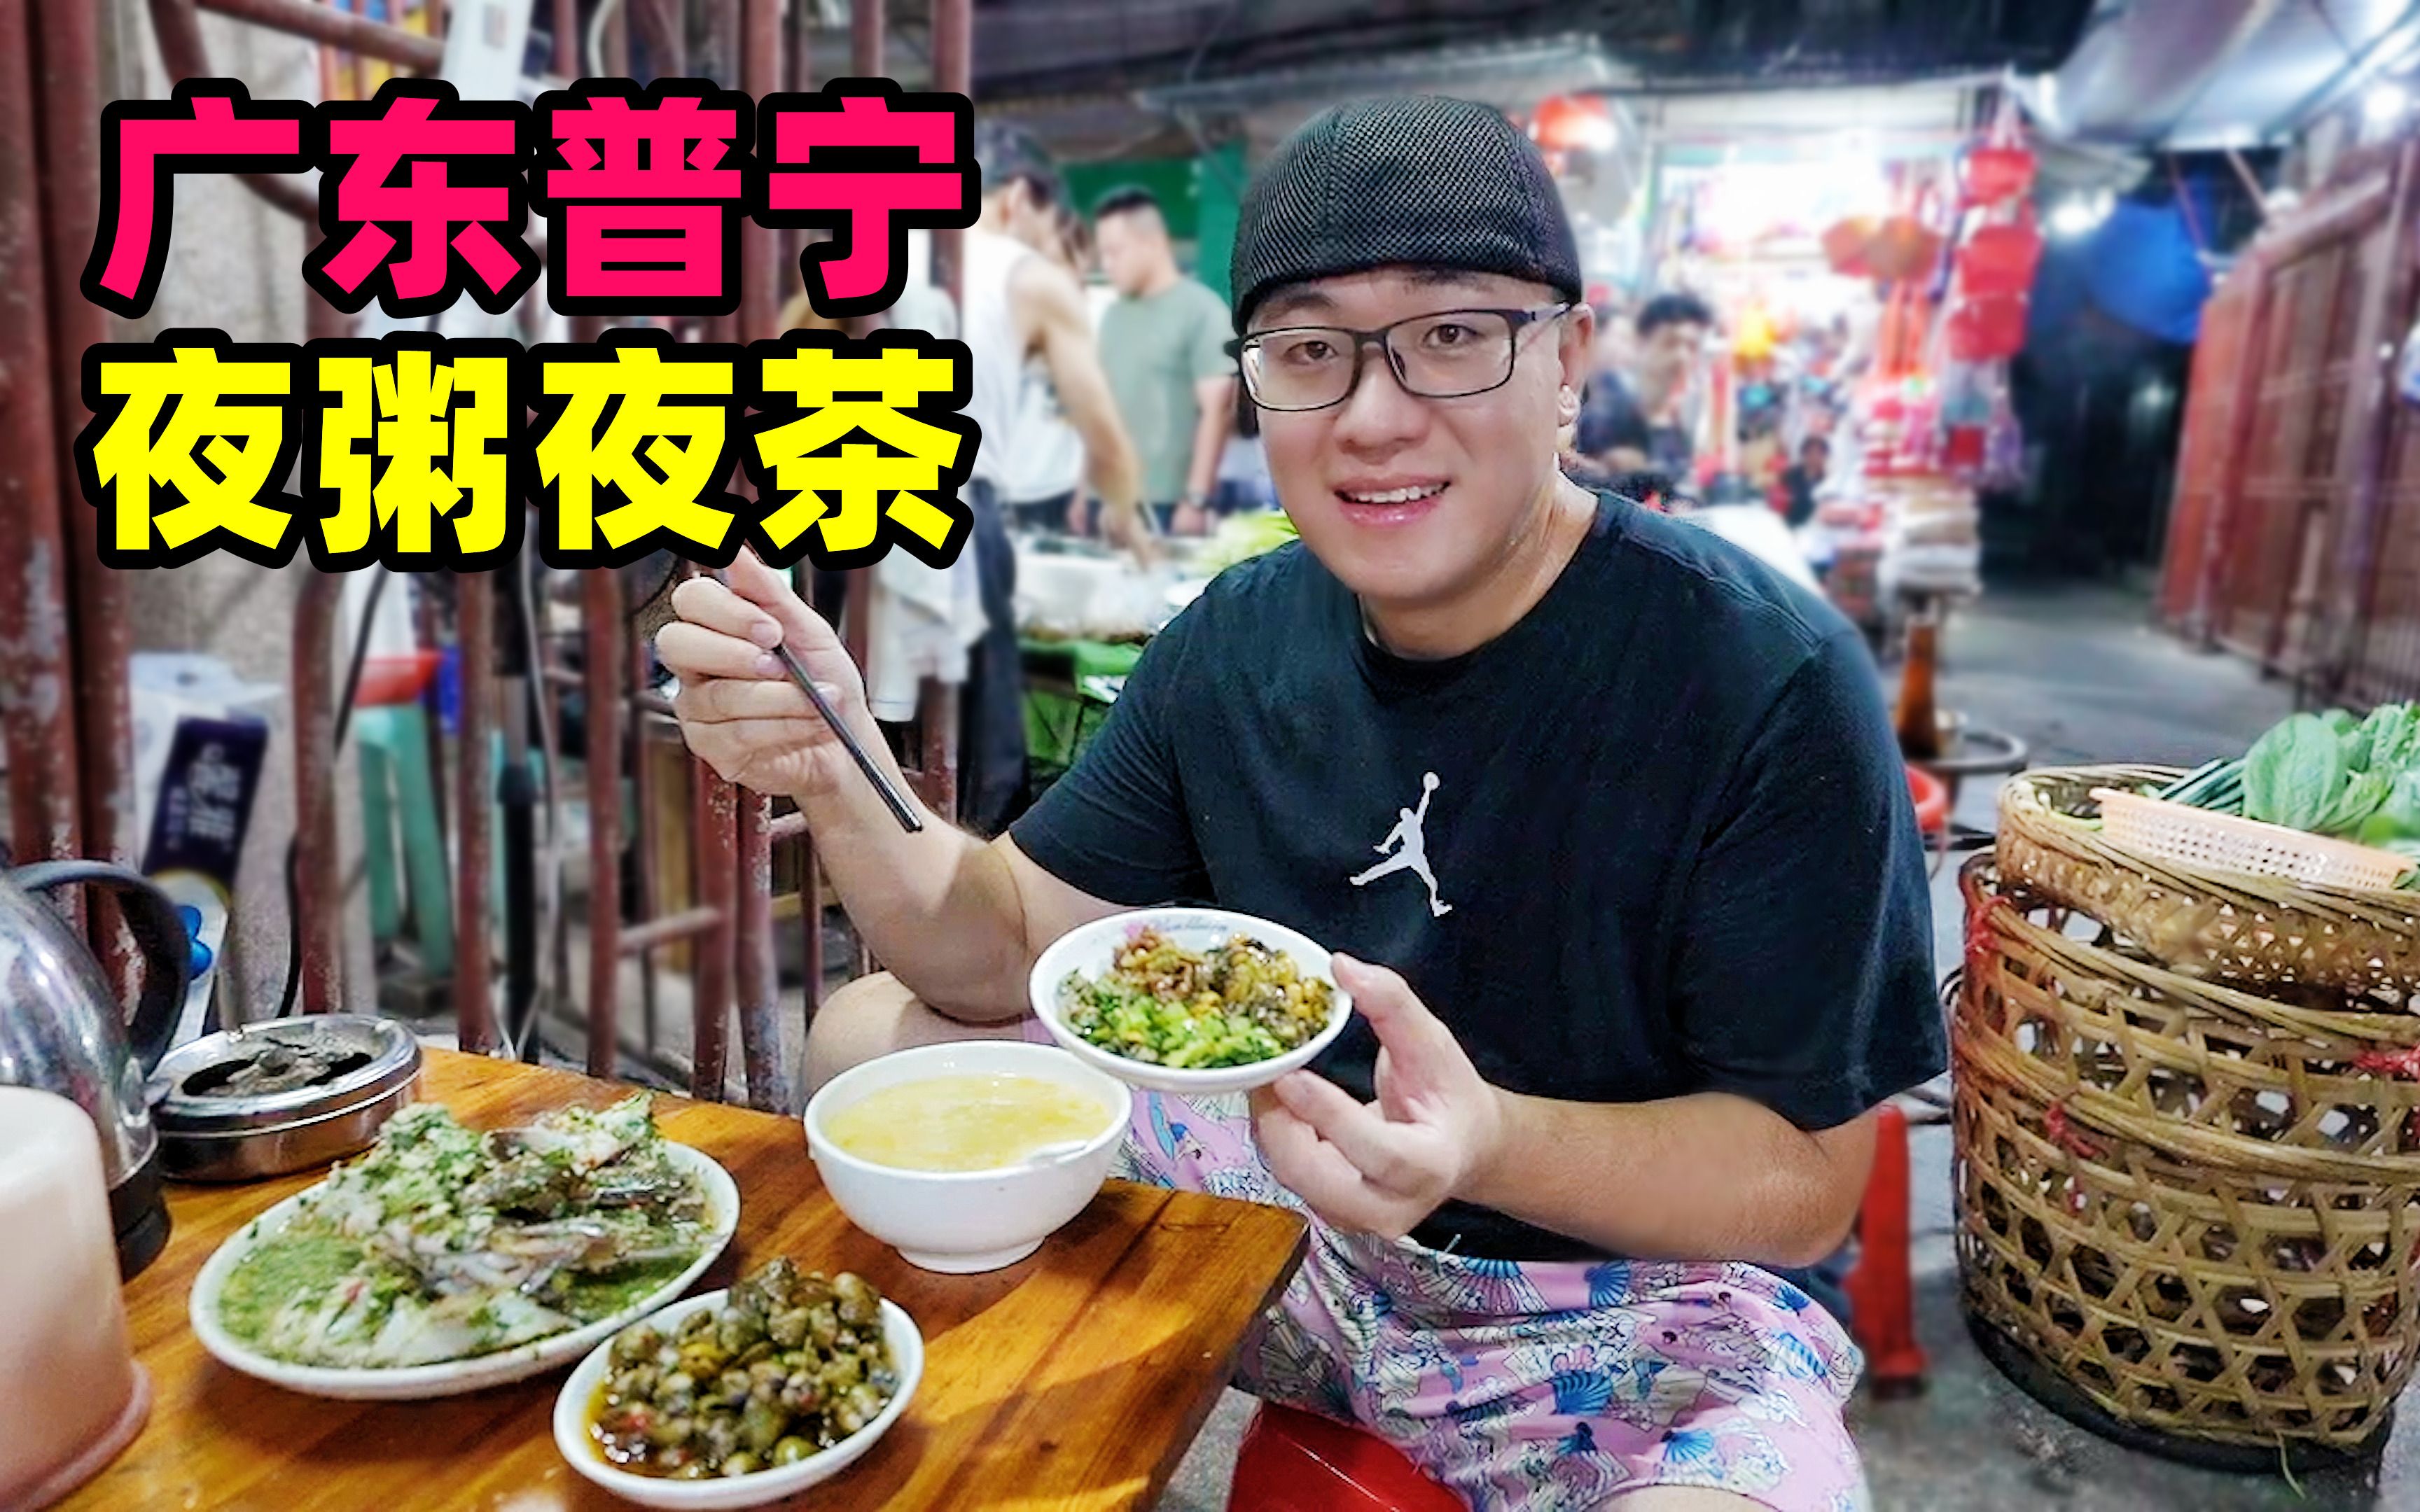 称霸广州20多年的“水蛇粥”，排队也要吃！